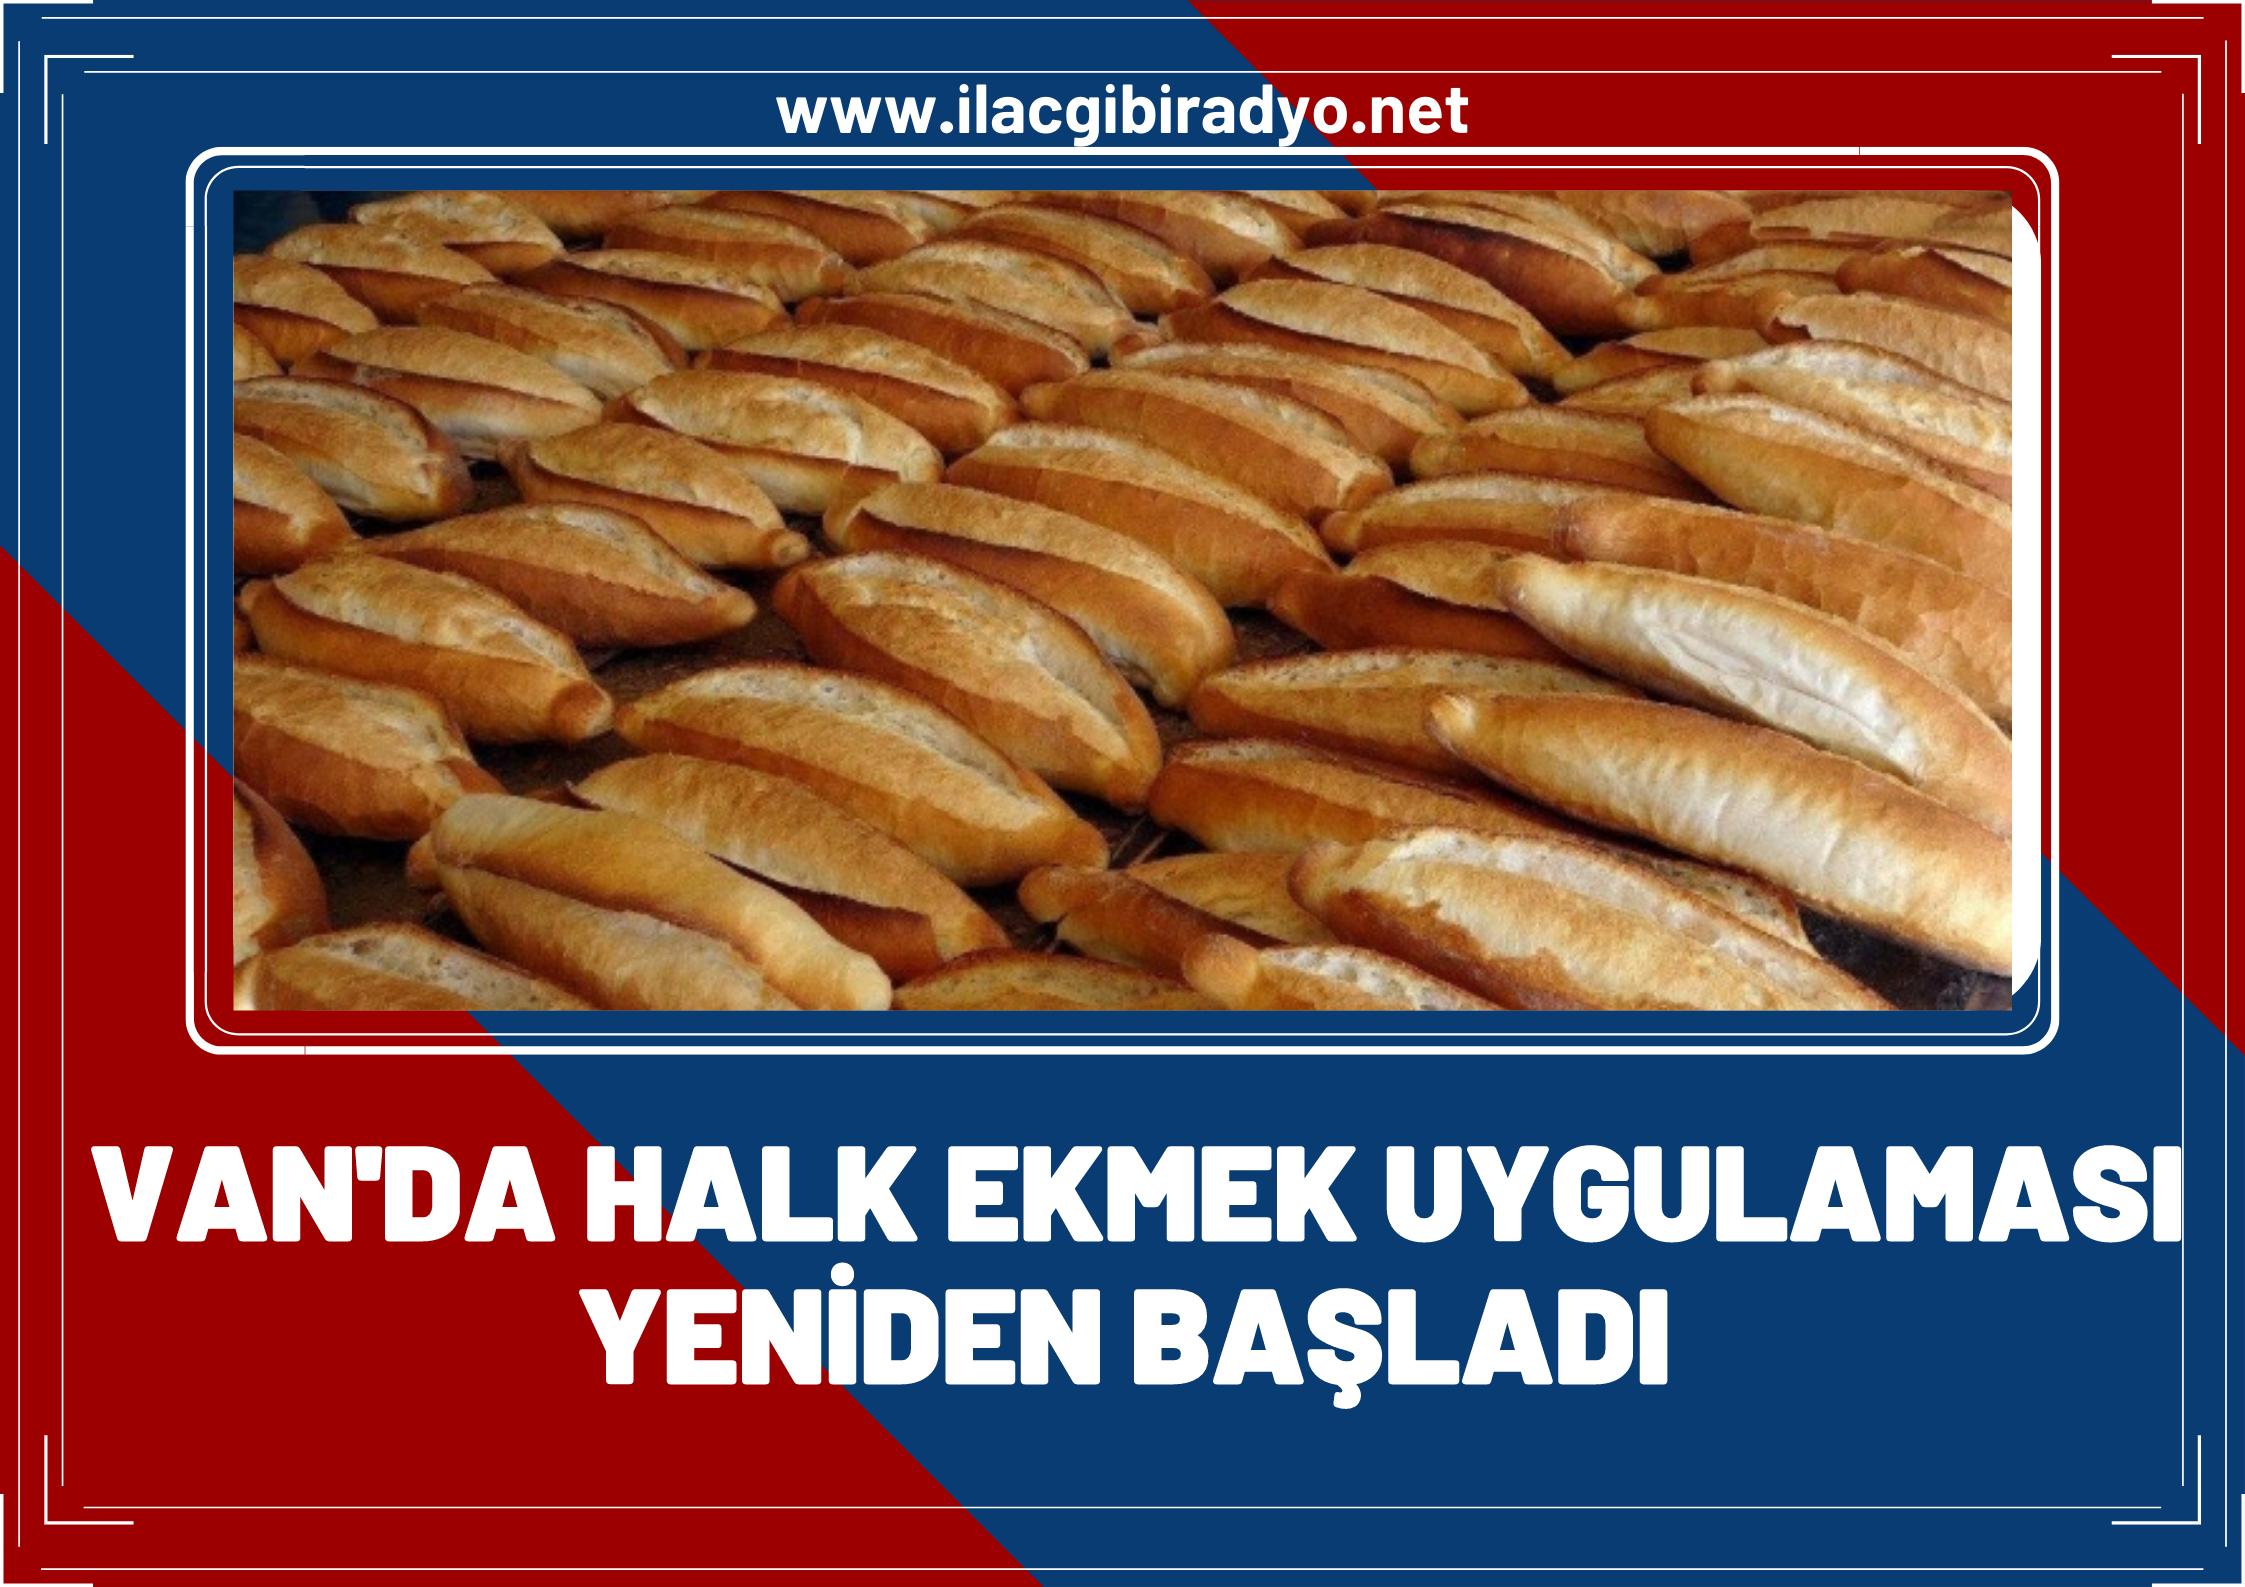 Van'da satışı durdurulan Halk Ekmek uygulaması yeniden başladı!